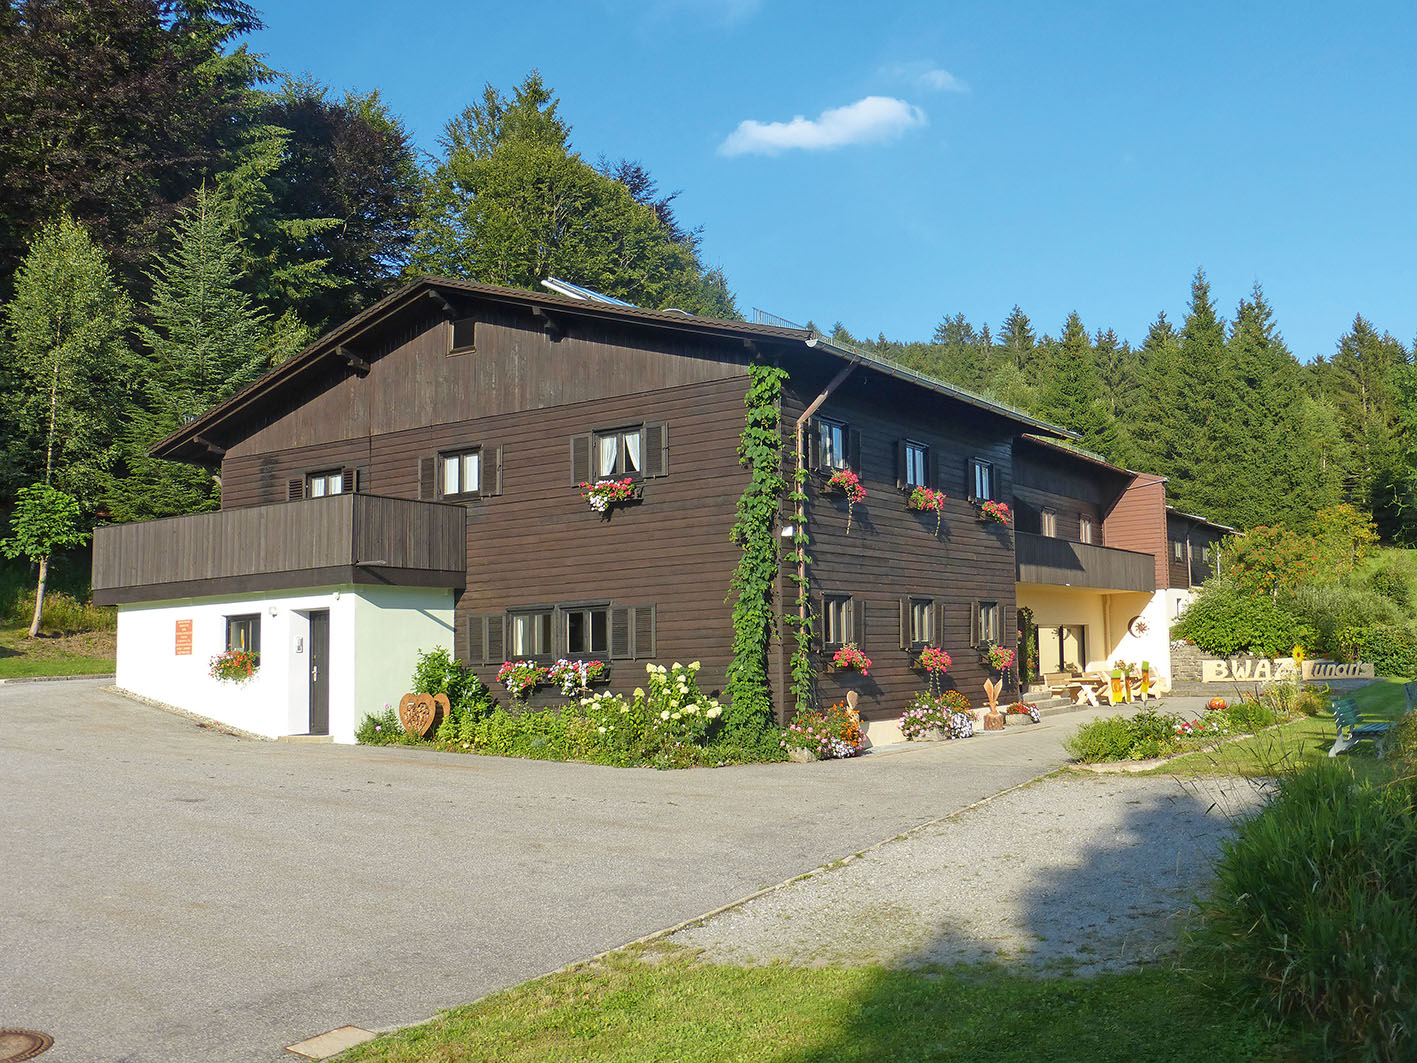 Das Gruppenhaus namens BayerWaldAktivZentrum liegt idyllisch im Wald. Darüber strahlt der blaue Sommerhimmel.